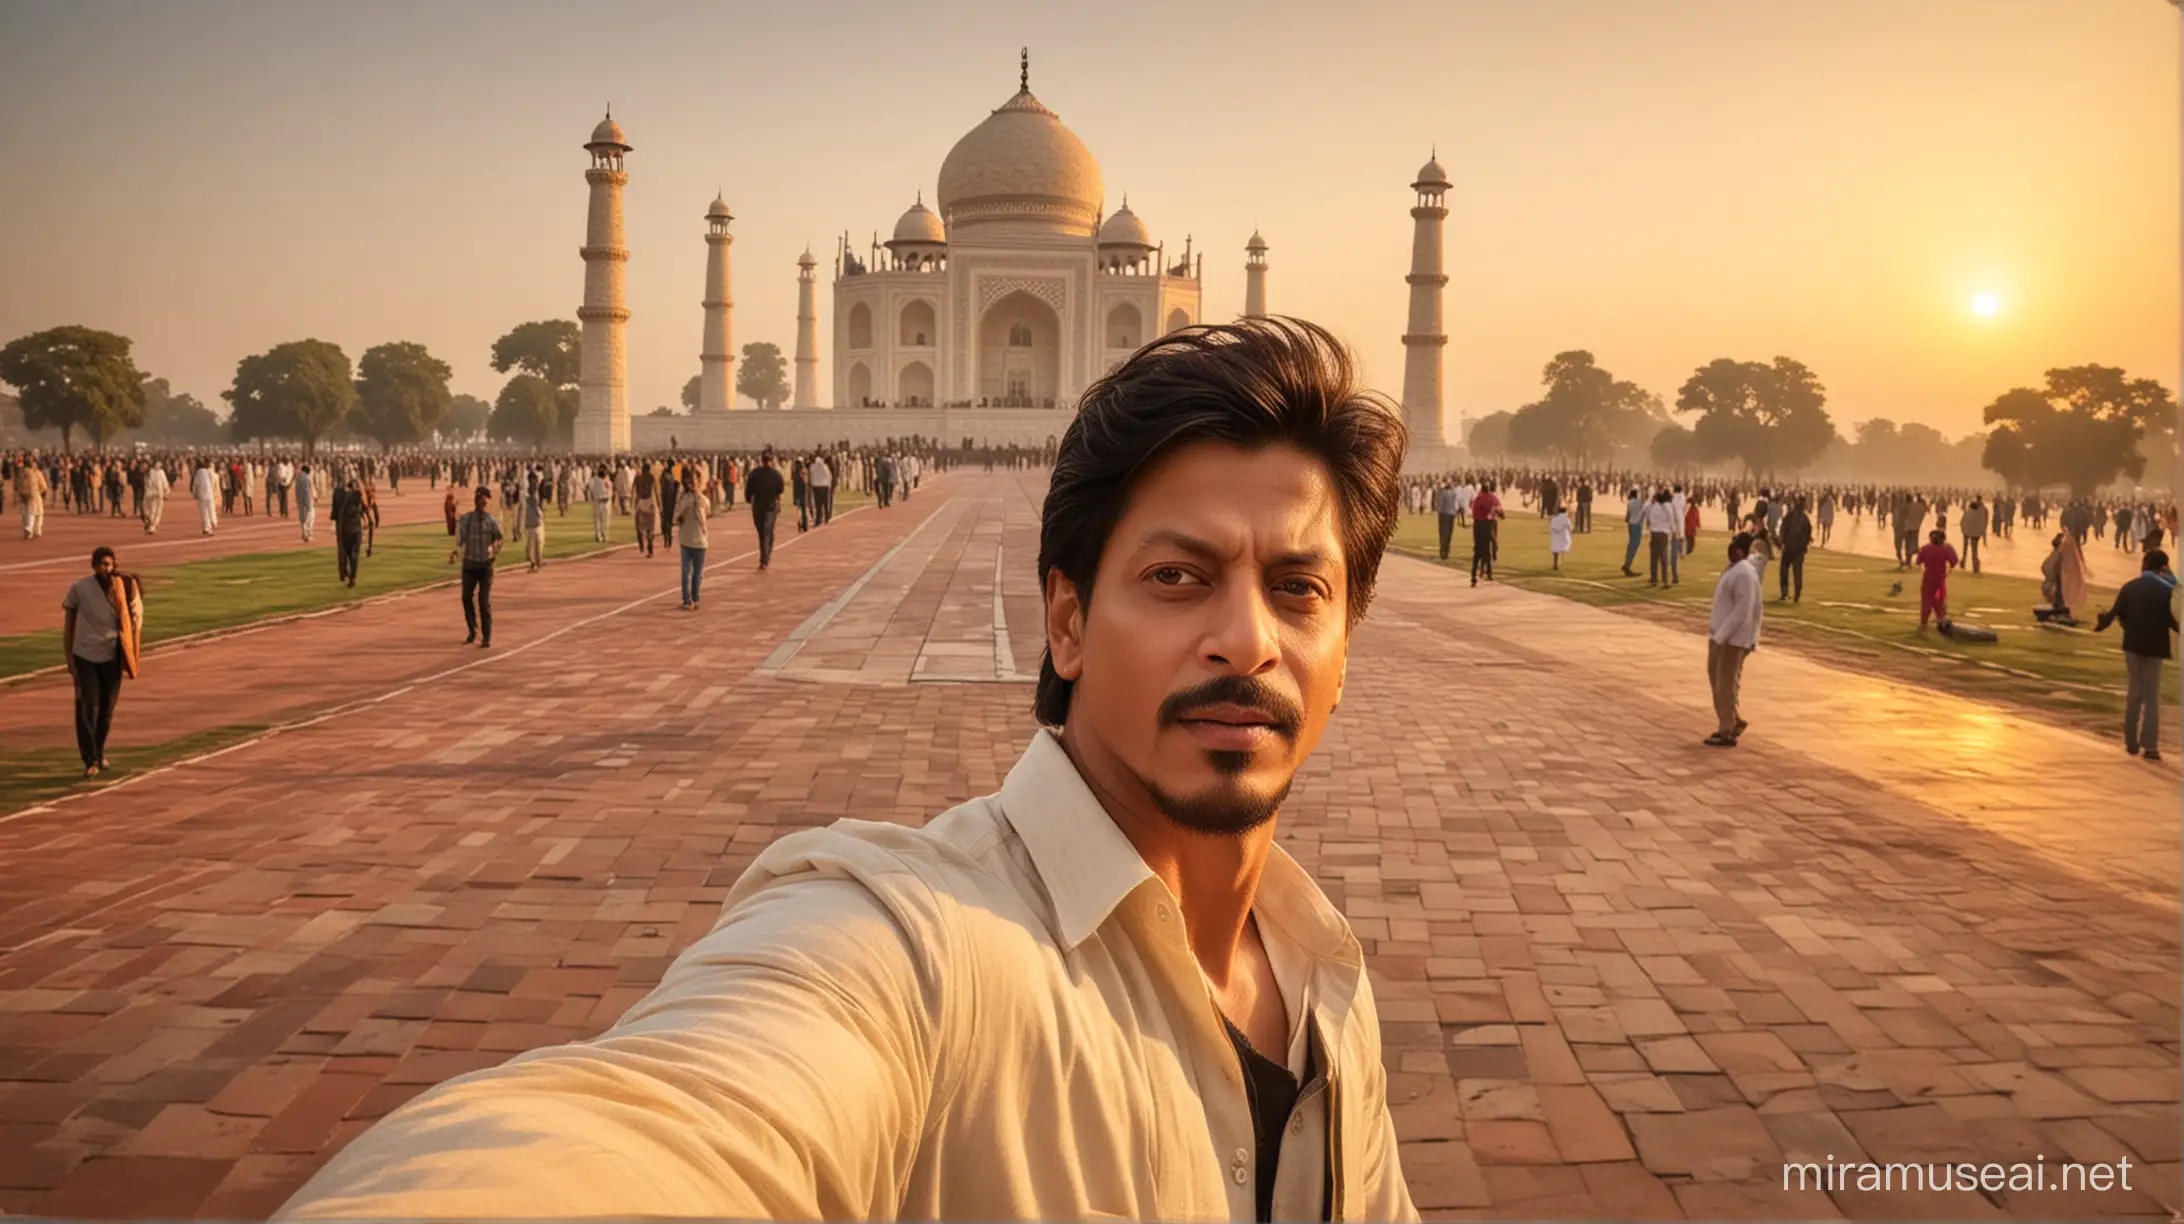 Shahrukh Khan Sunset Selfie at Taj Mahal